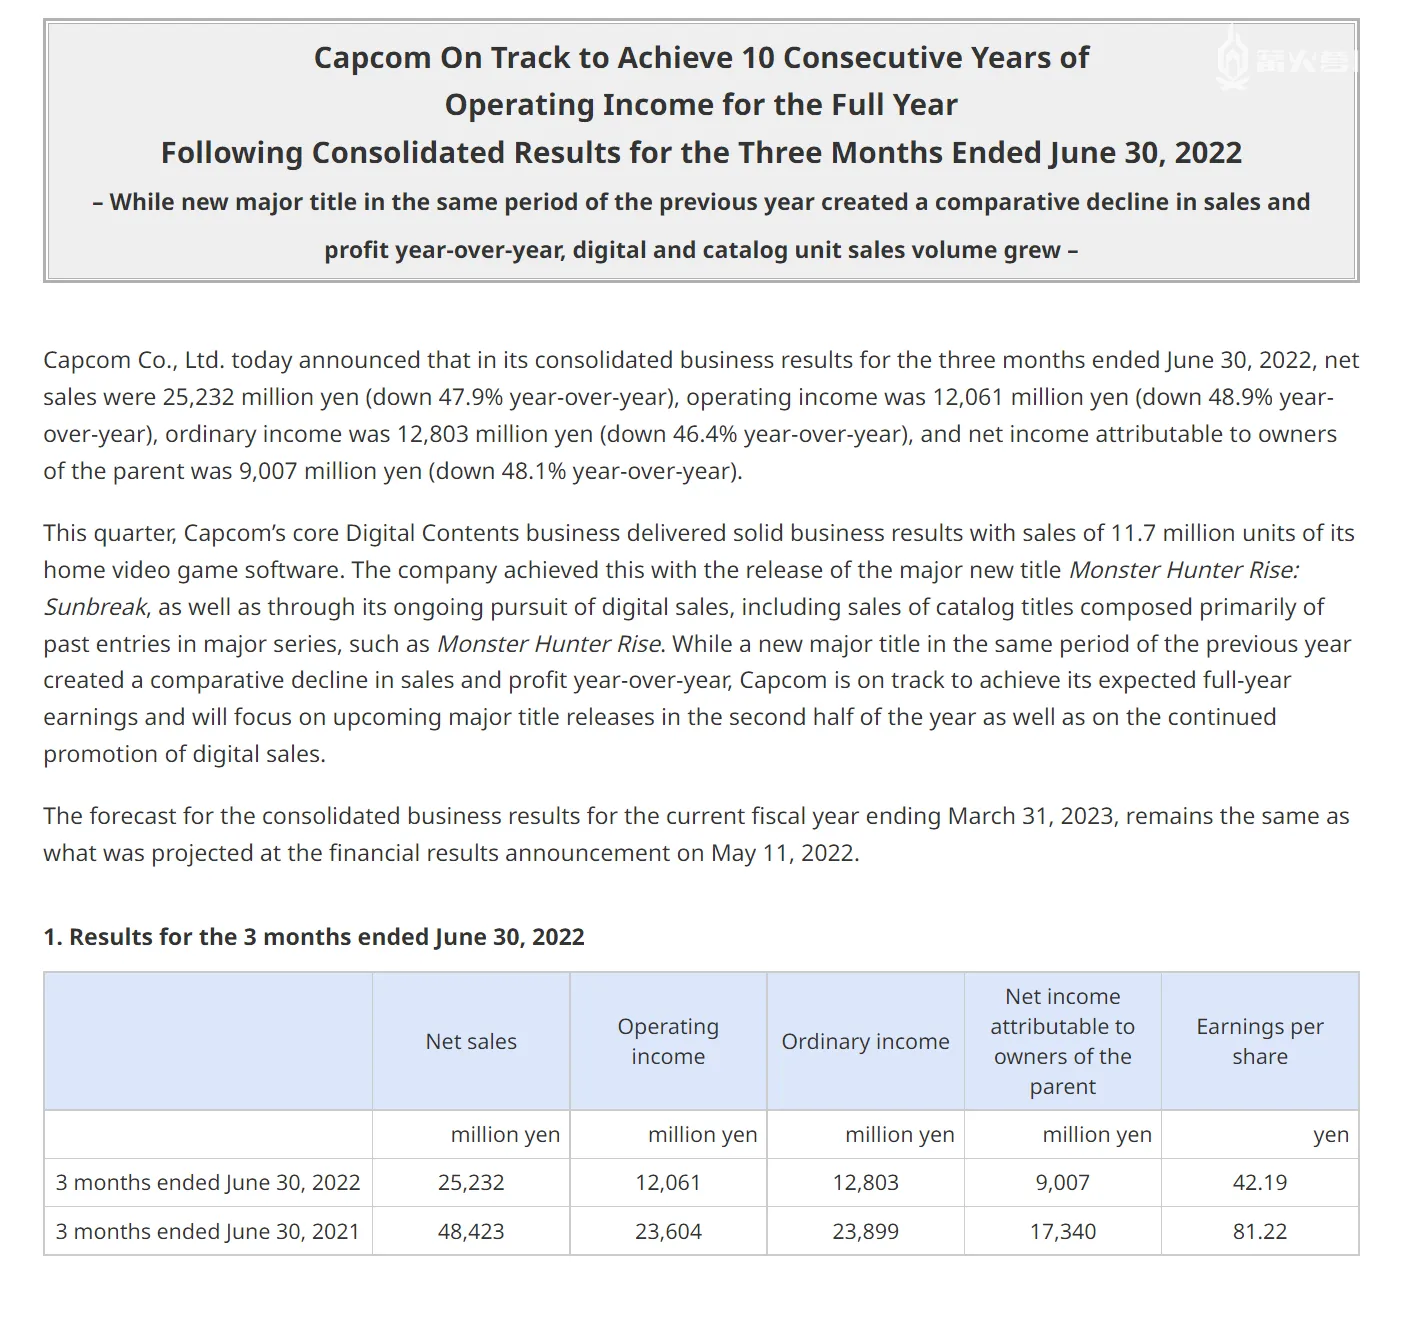 CAPCOM 2023 財年 Q1 財報公佈，淨銷售額與營業收入均大幅下降